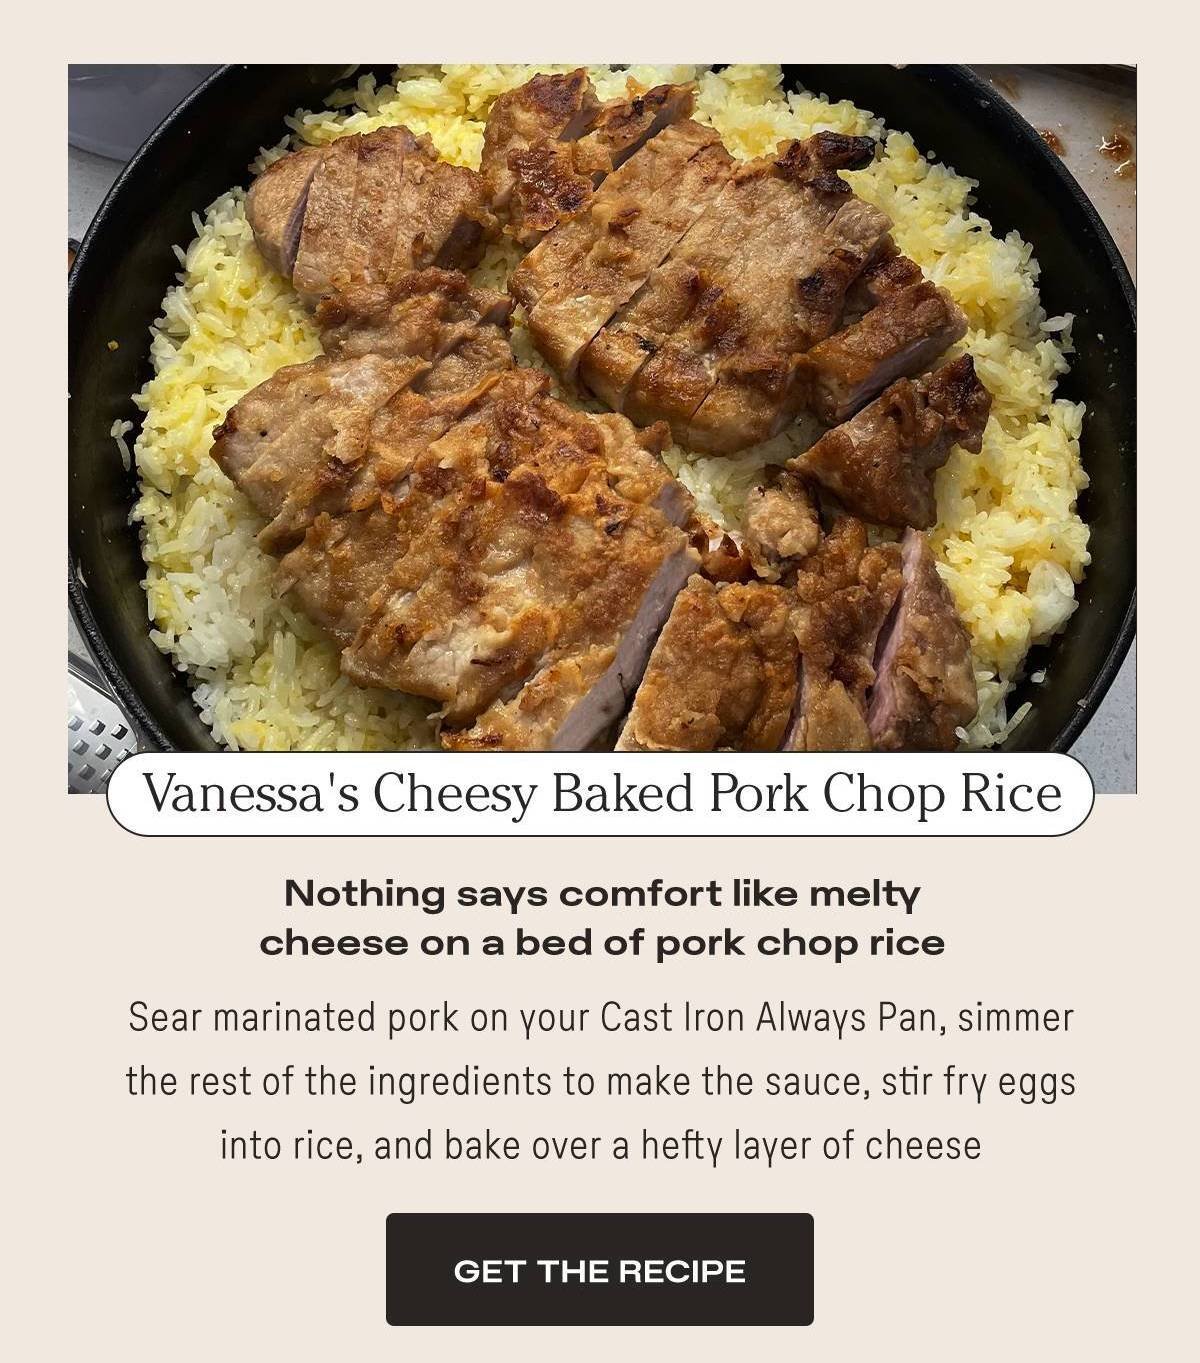 Vanessa's Cheesy Baked Pork Chop Rice